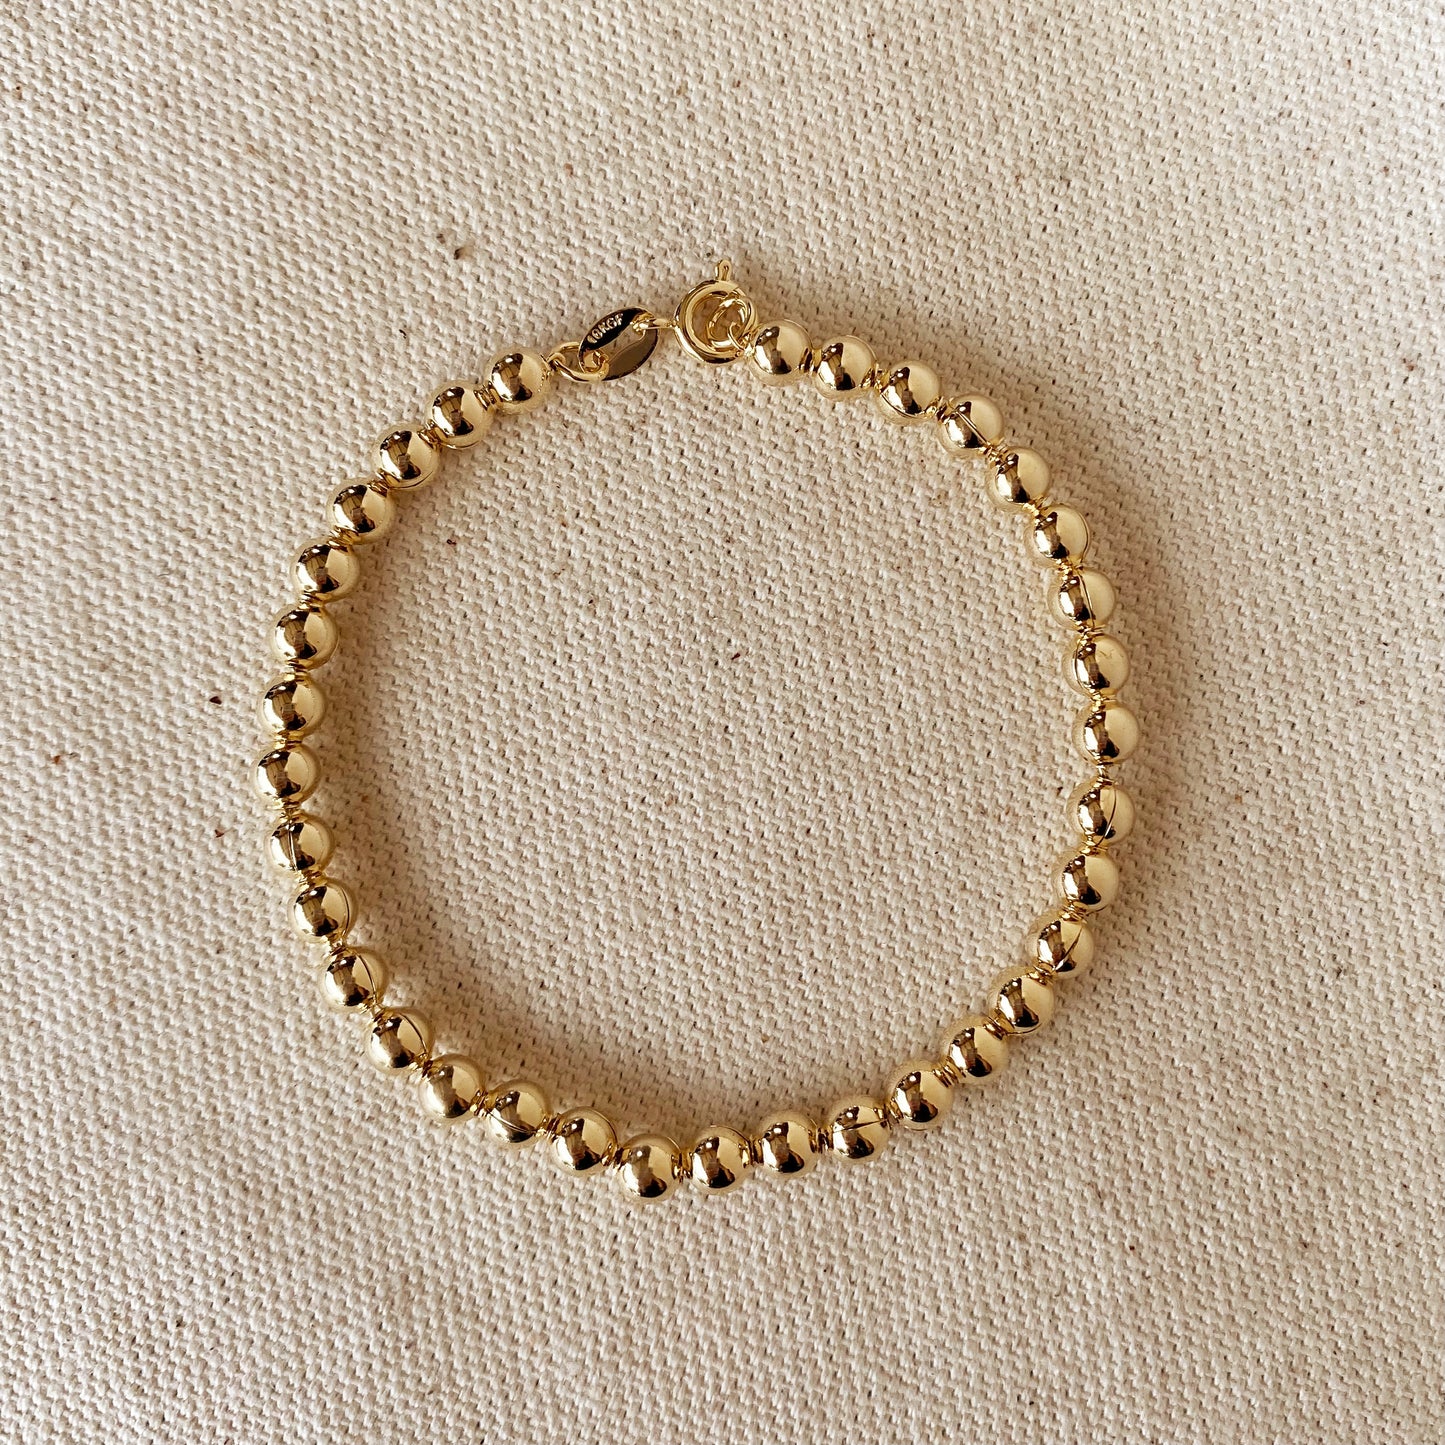 GoldFi 18k Gold Filled 4.5 mm Beaded Bracelet